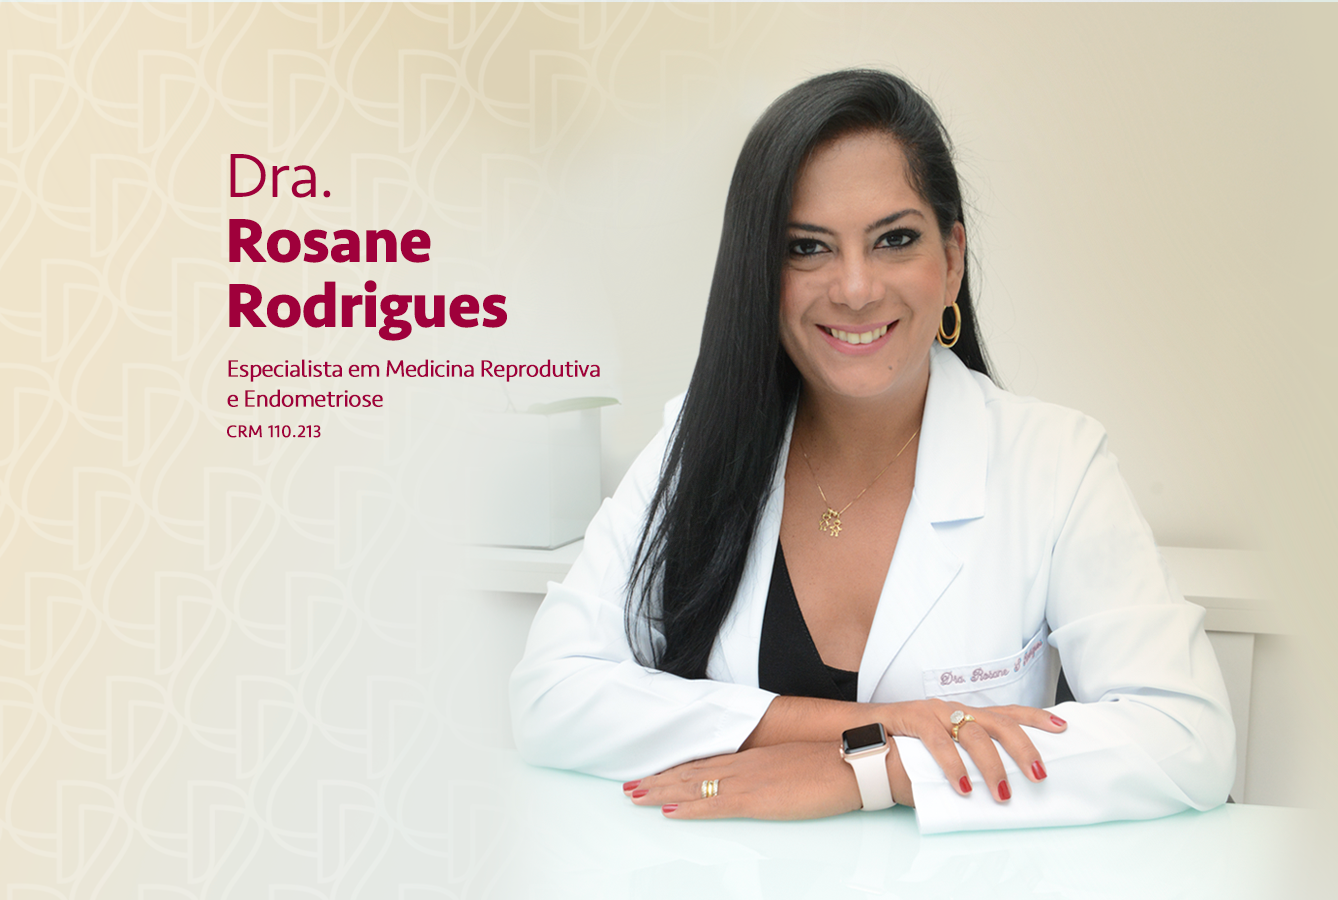 Dra. Rosane Rodrigues